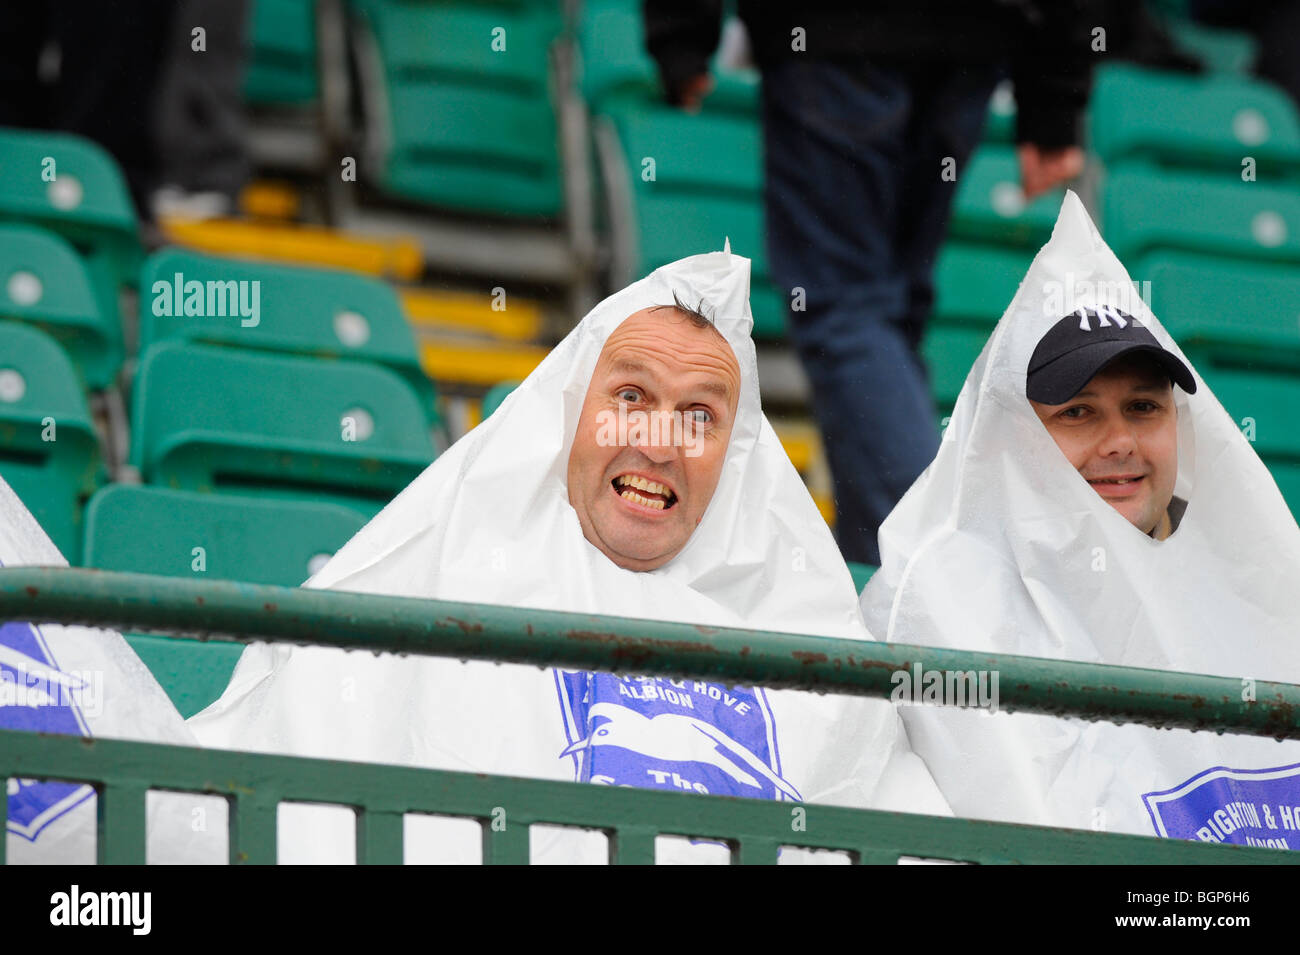 Heavy Rain ve estos dos dedicados a los aficionados al fútbol vistiendo en forma de pirámide, bolsas de plástico para mantener seco en Brighton. Foto de stock